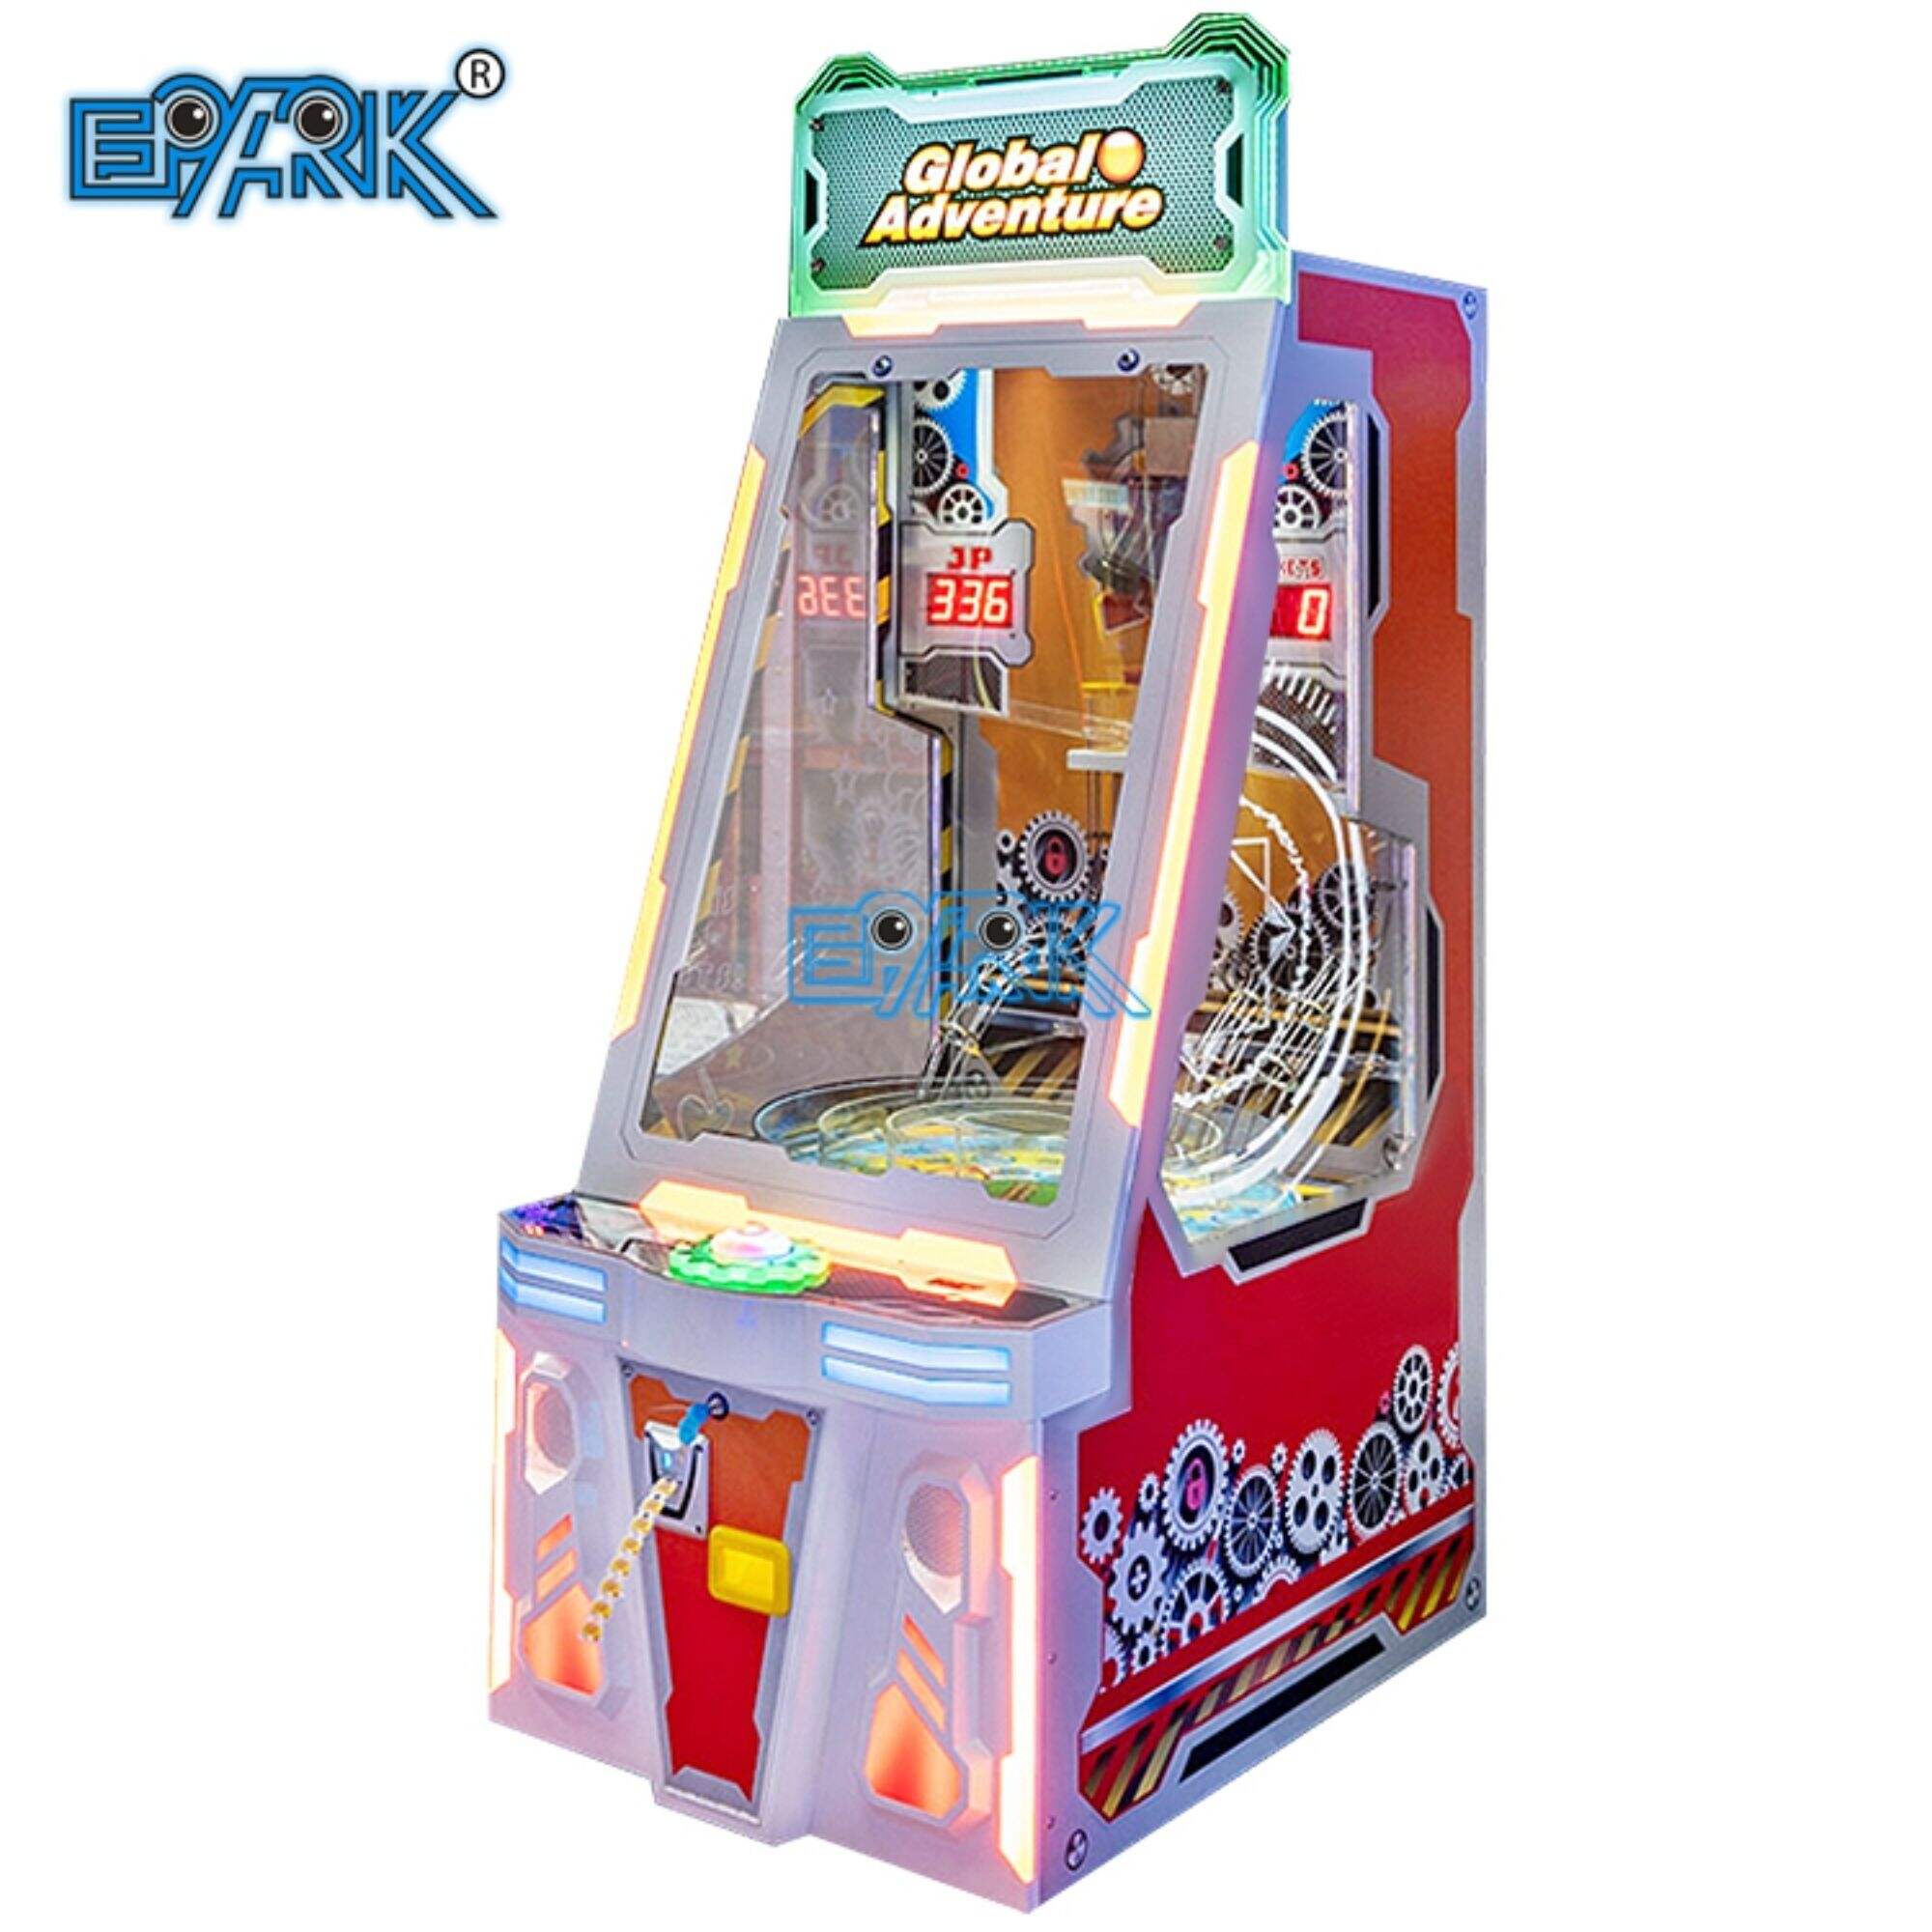 Adventure Drop Ball Skip Redemption Game Machine Children's Indoor Arcade Game